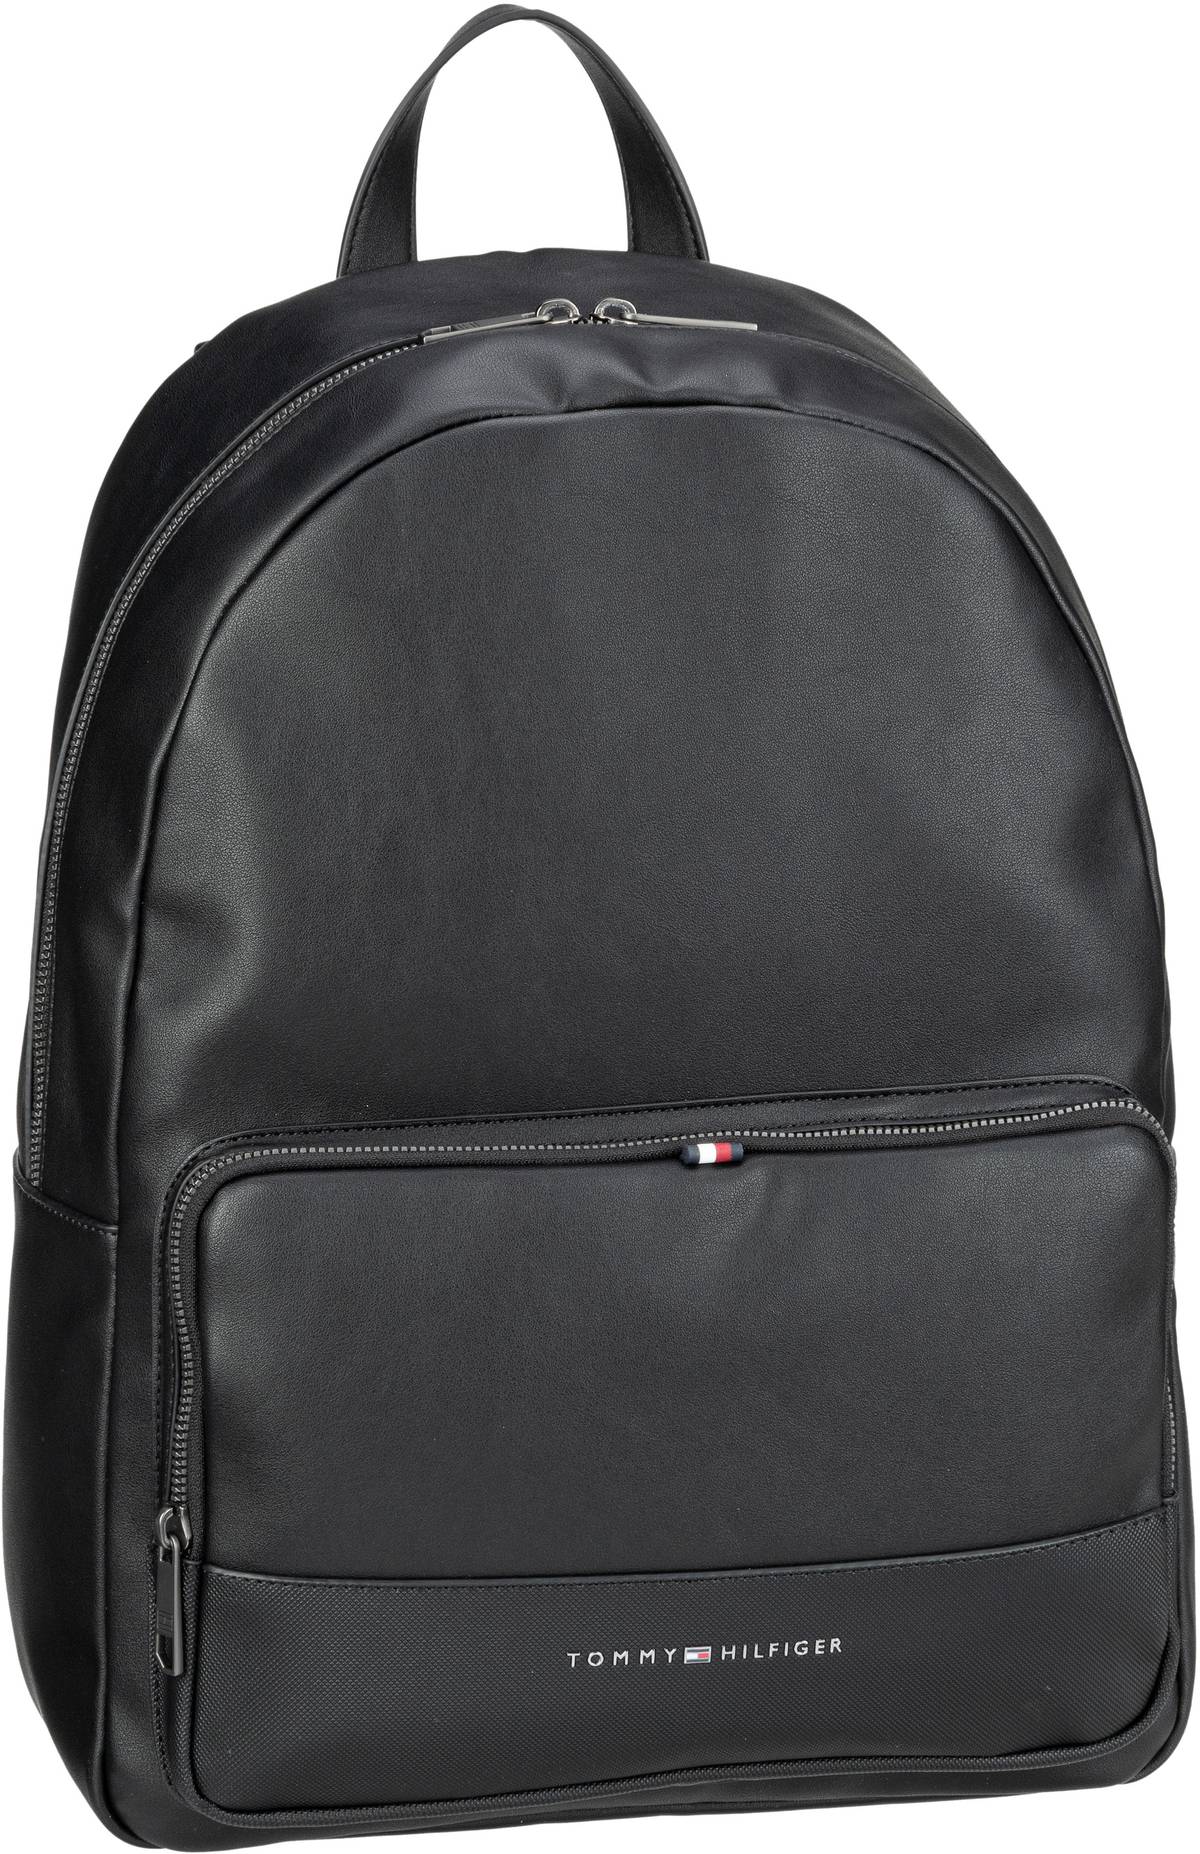 tommy hilfiger -  Rucksack / Daypack TH Essential Backpack SP23 Black (16 Liter)